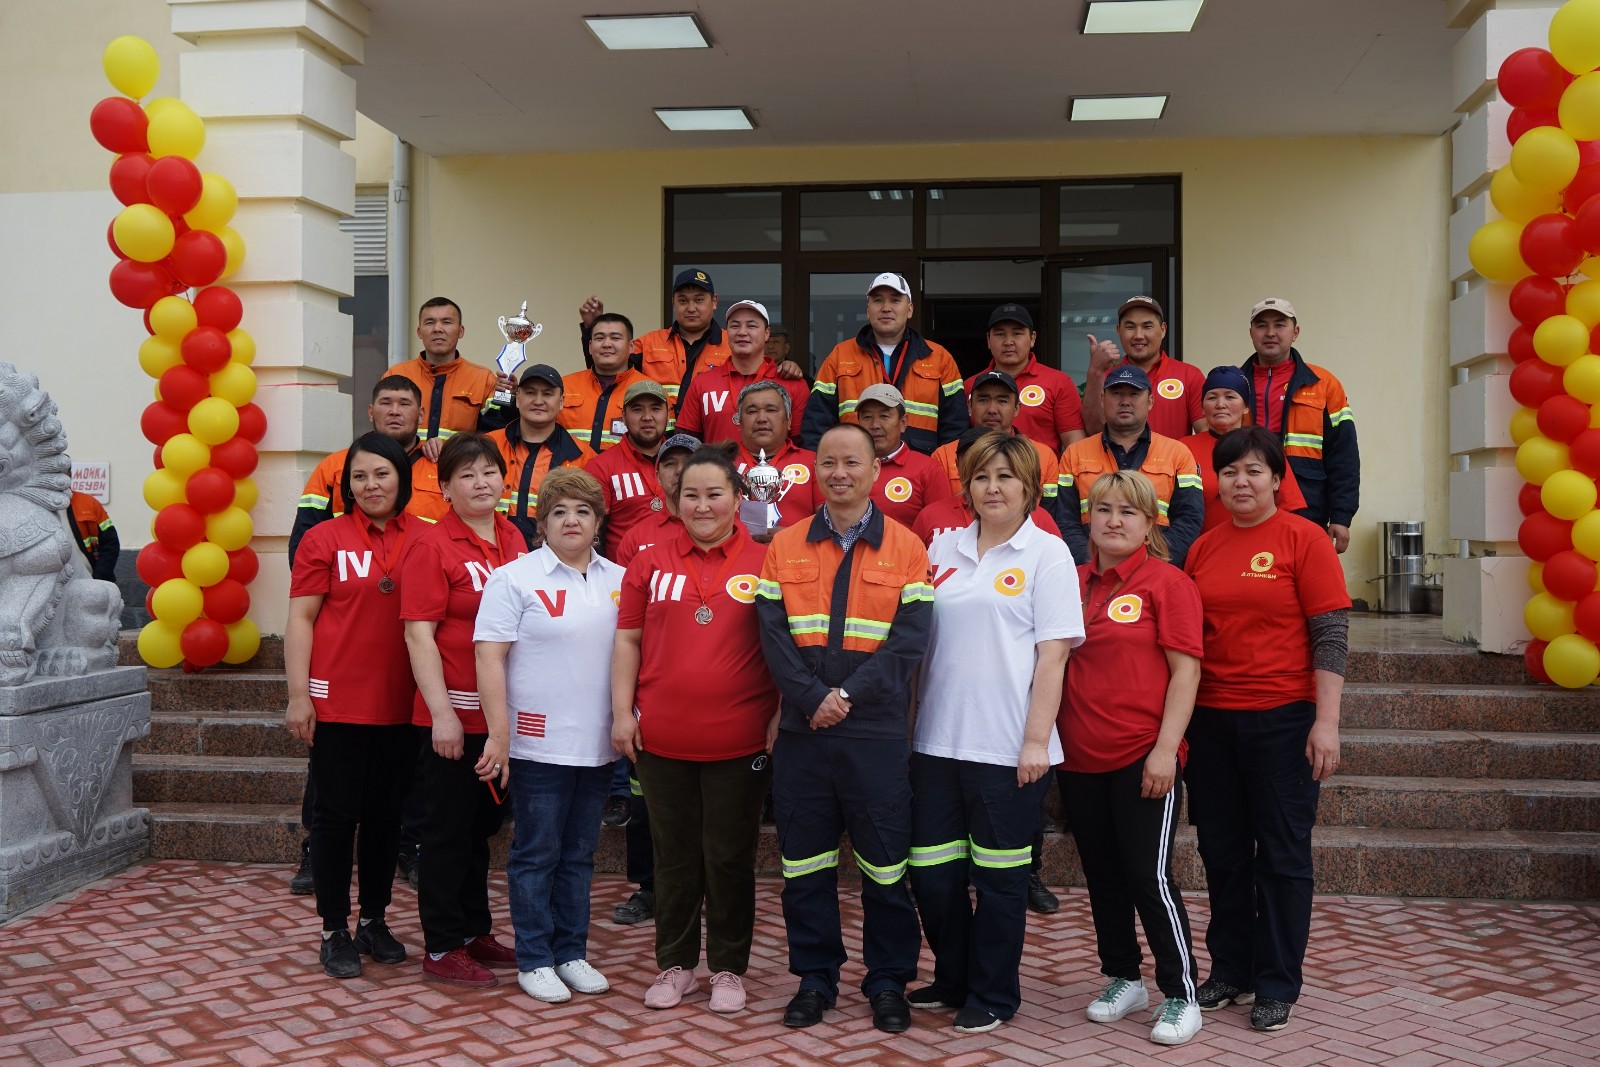 ОсОО «Алтынкен» в Кыргызстане для сплоченности коллектива провел cпортивные соревнования между сотрудниками